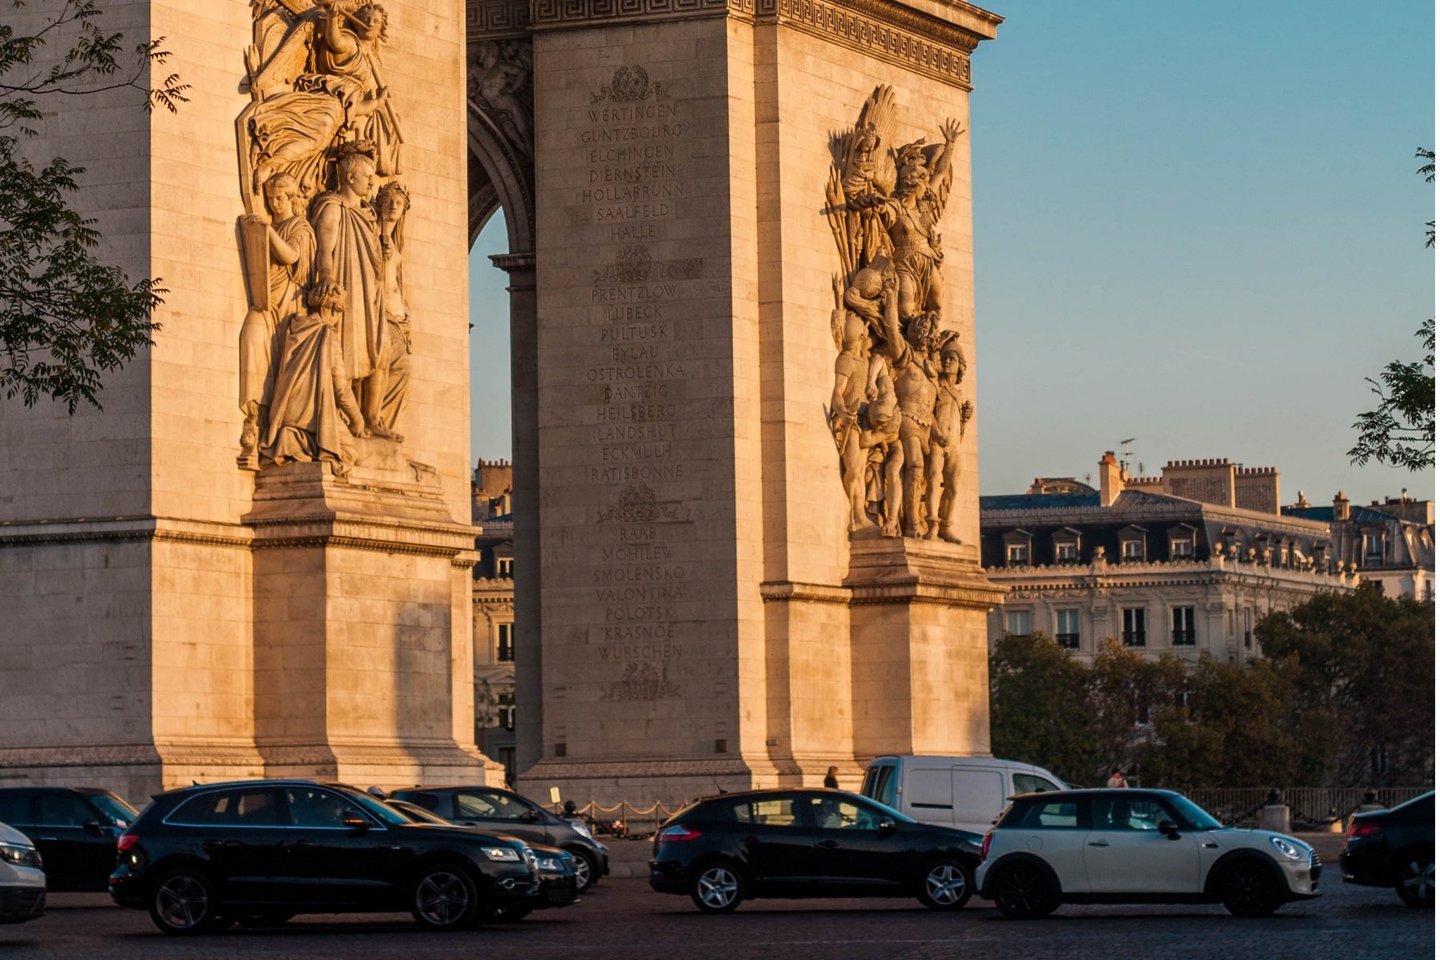 Paryžius siekia išstumti didelius visureigius iš miesto centro, didindamas stovėjimo mokestį už sunkius automobilius.<br>Arthur Humeau/Unsplash nuotr.